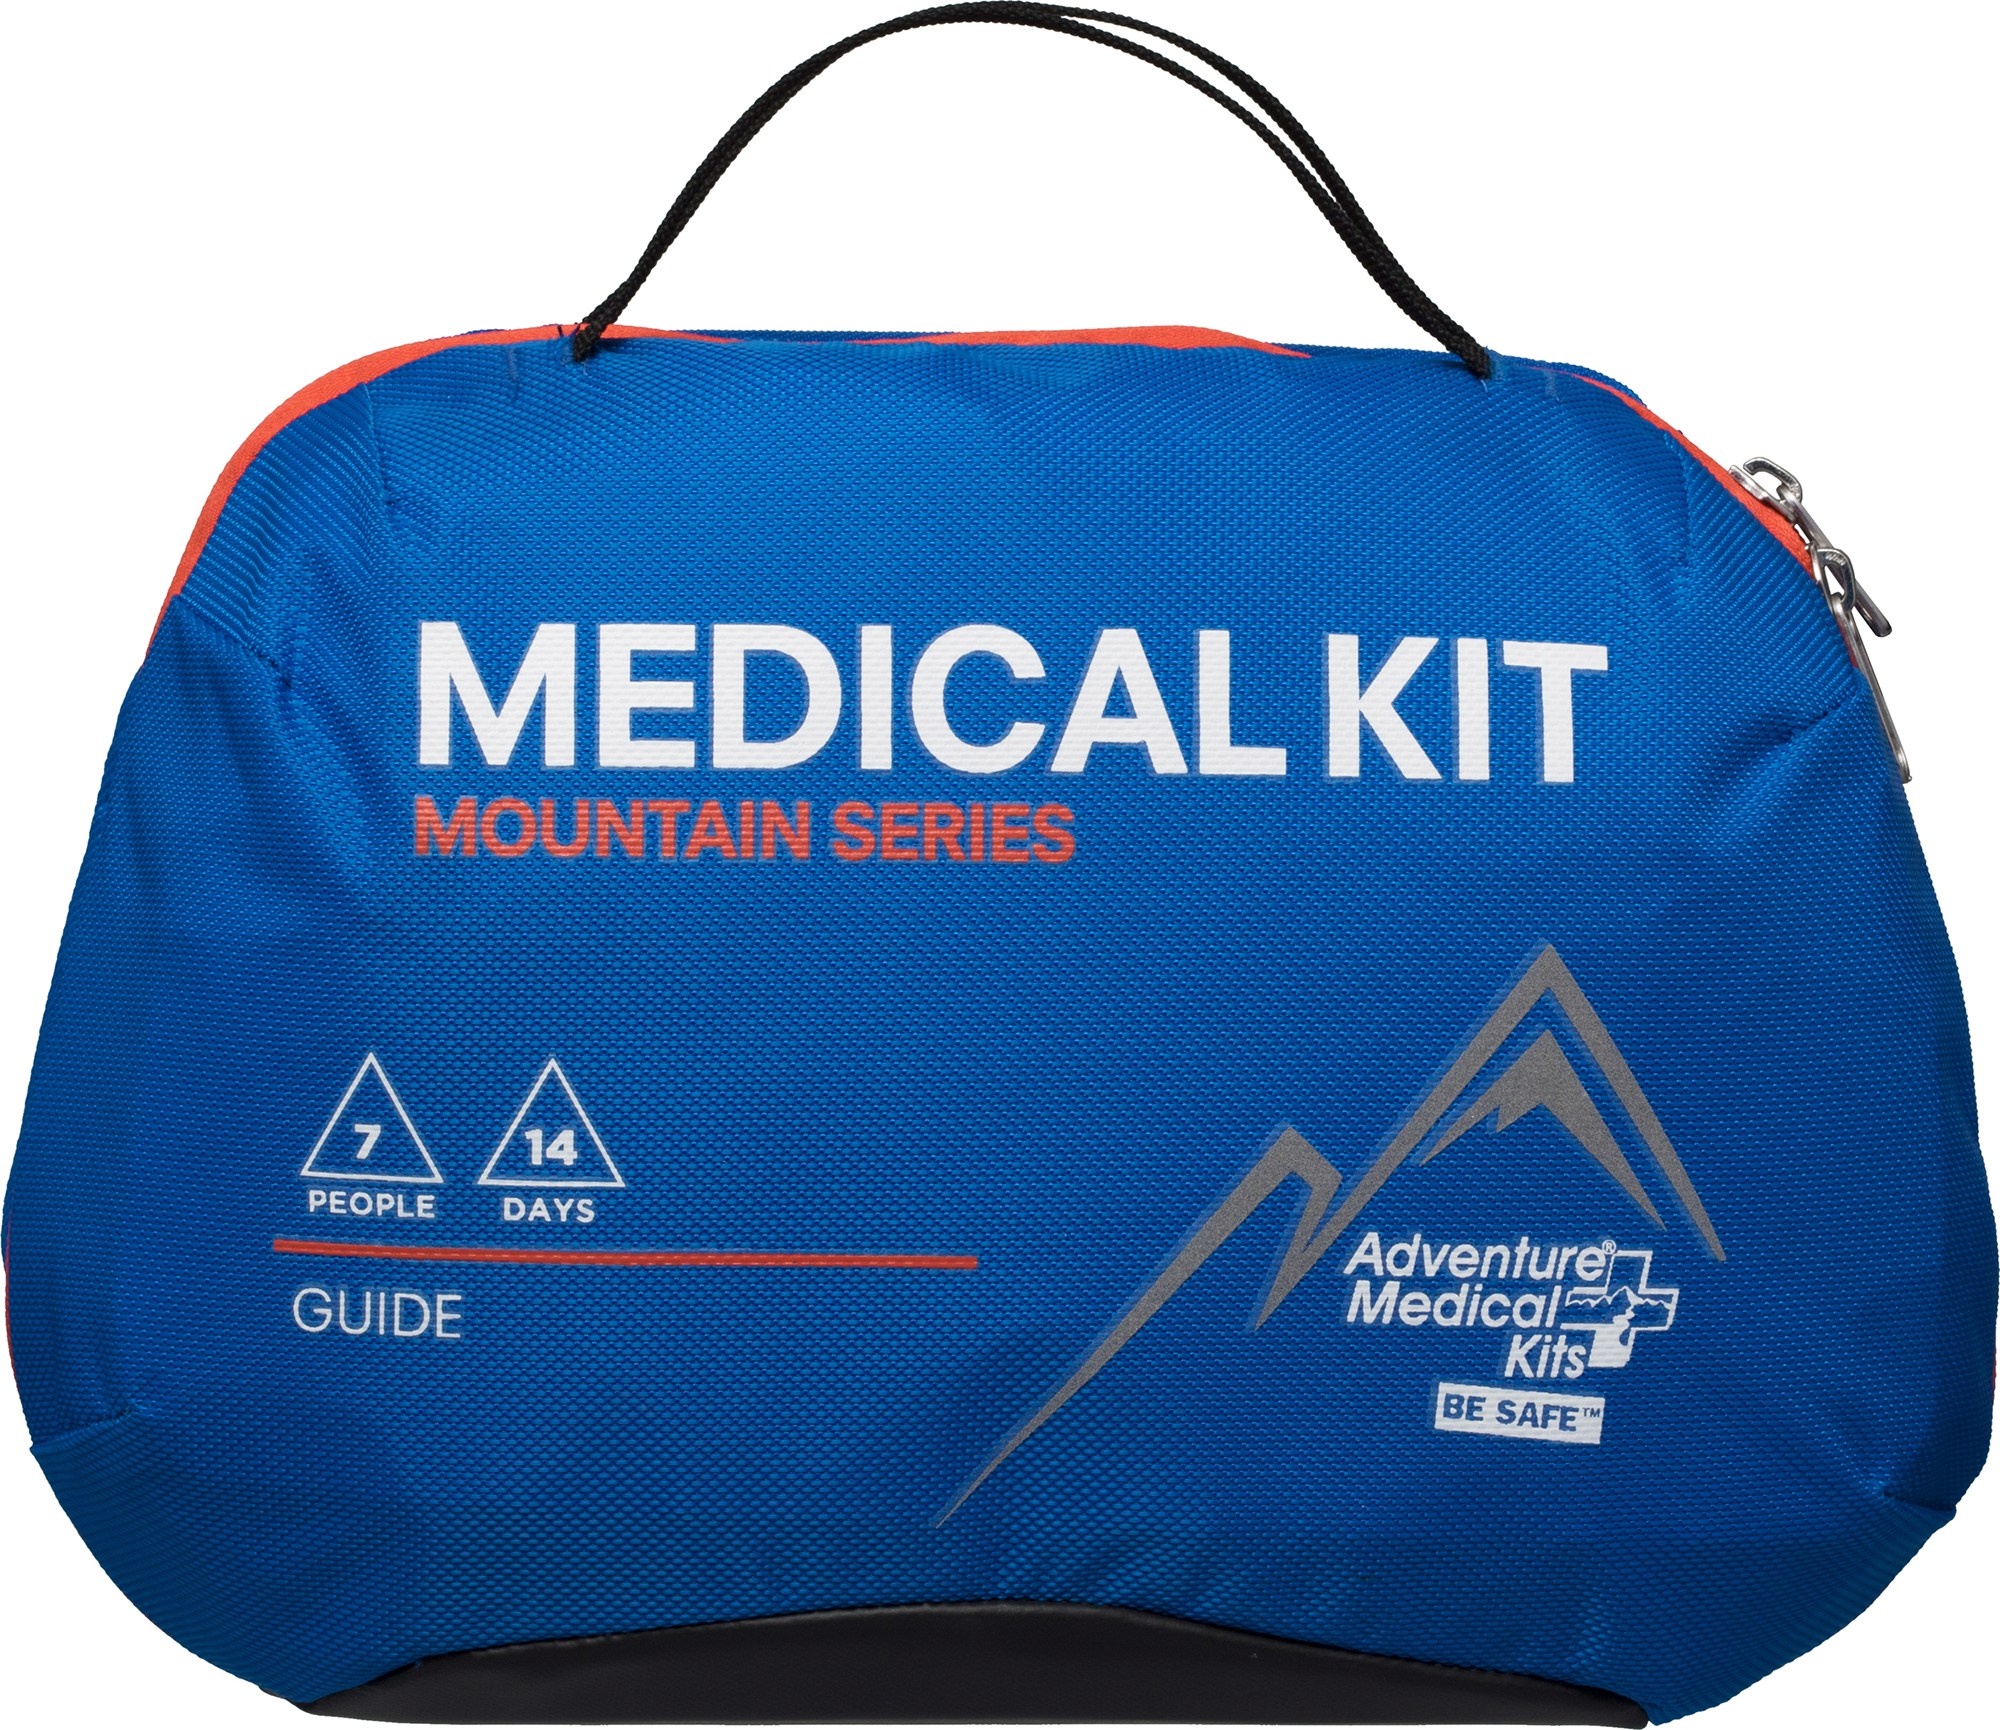 Медицинская аптечка Mountain Series Guide Adventure Medical Kits, синий медицинский набор для альпинистов серии mountain adventure medical kits синий